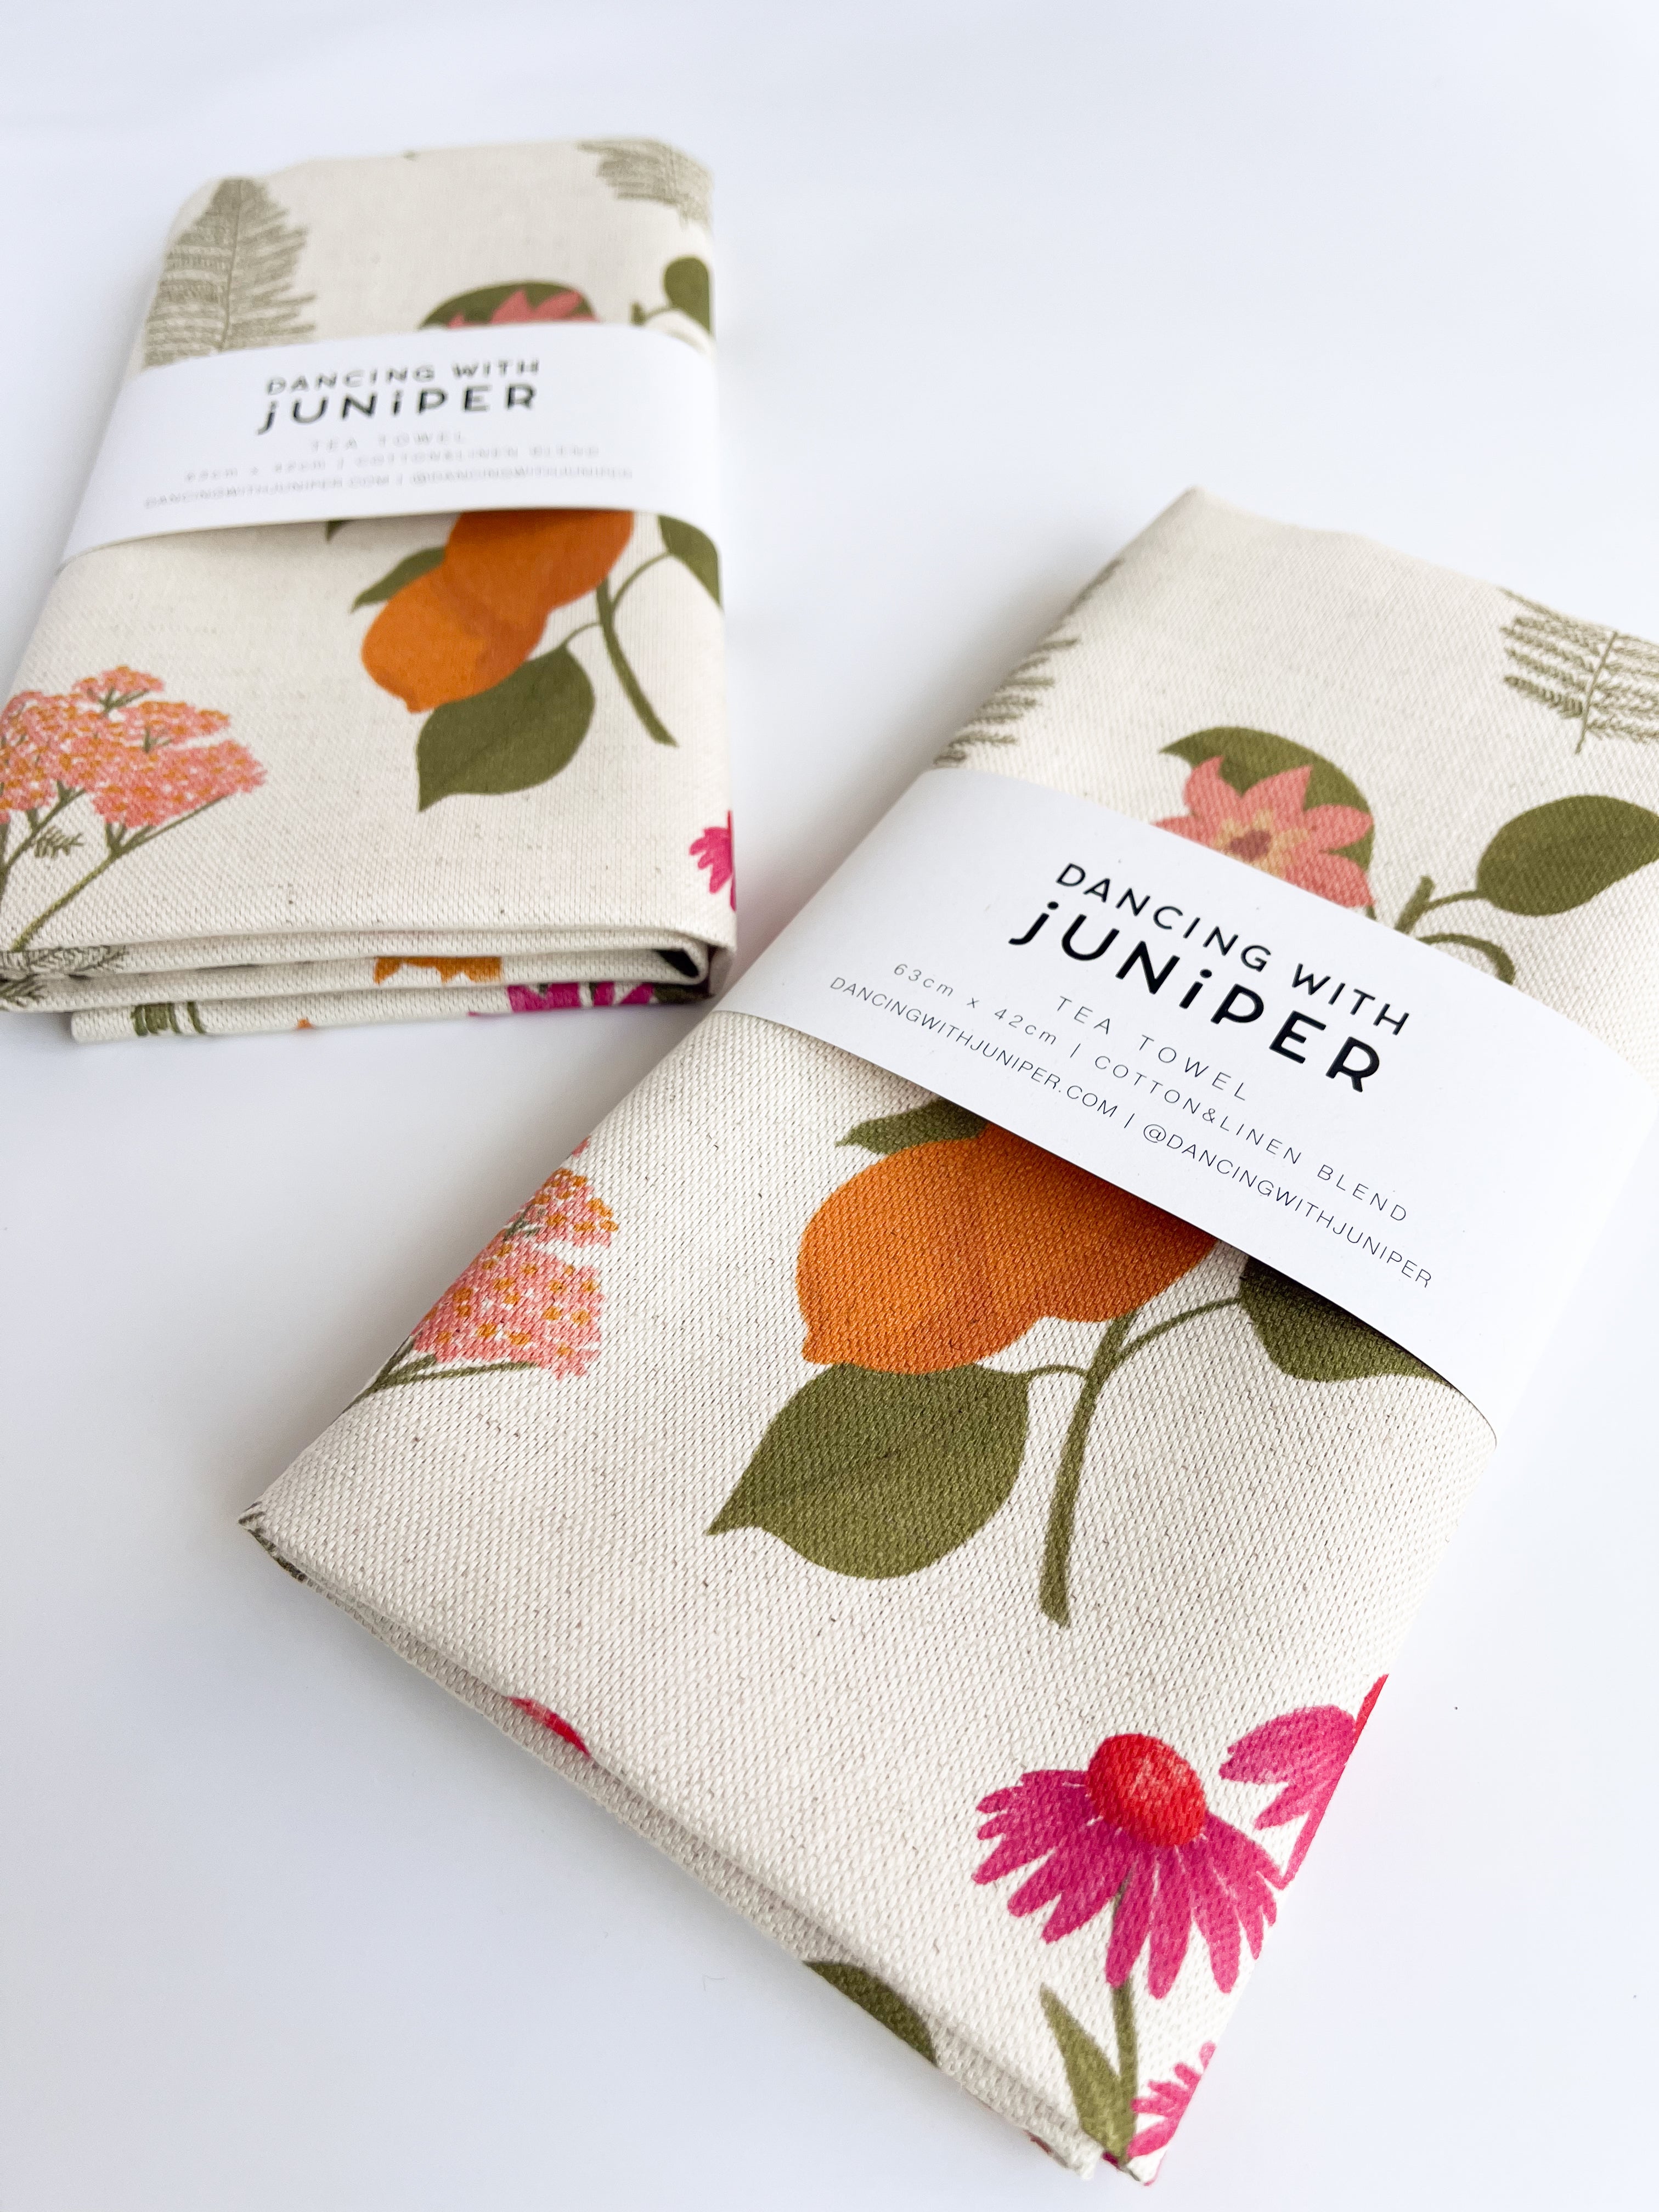 Lovely Bunch Tea Towel - tea towel - Dancing with juniper